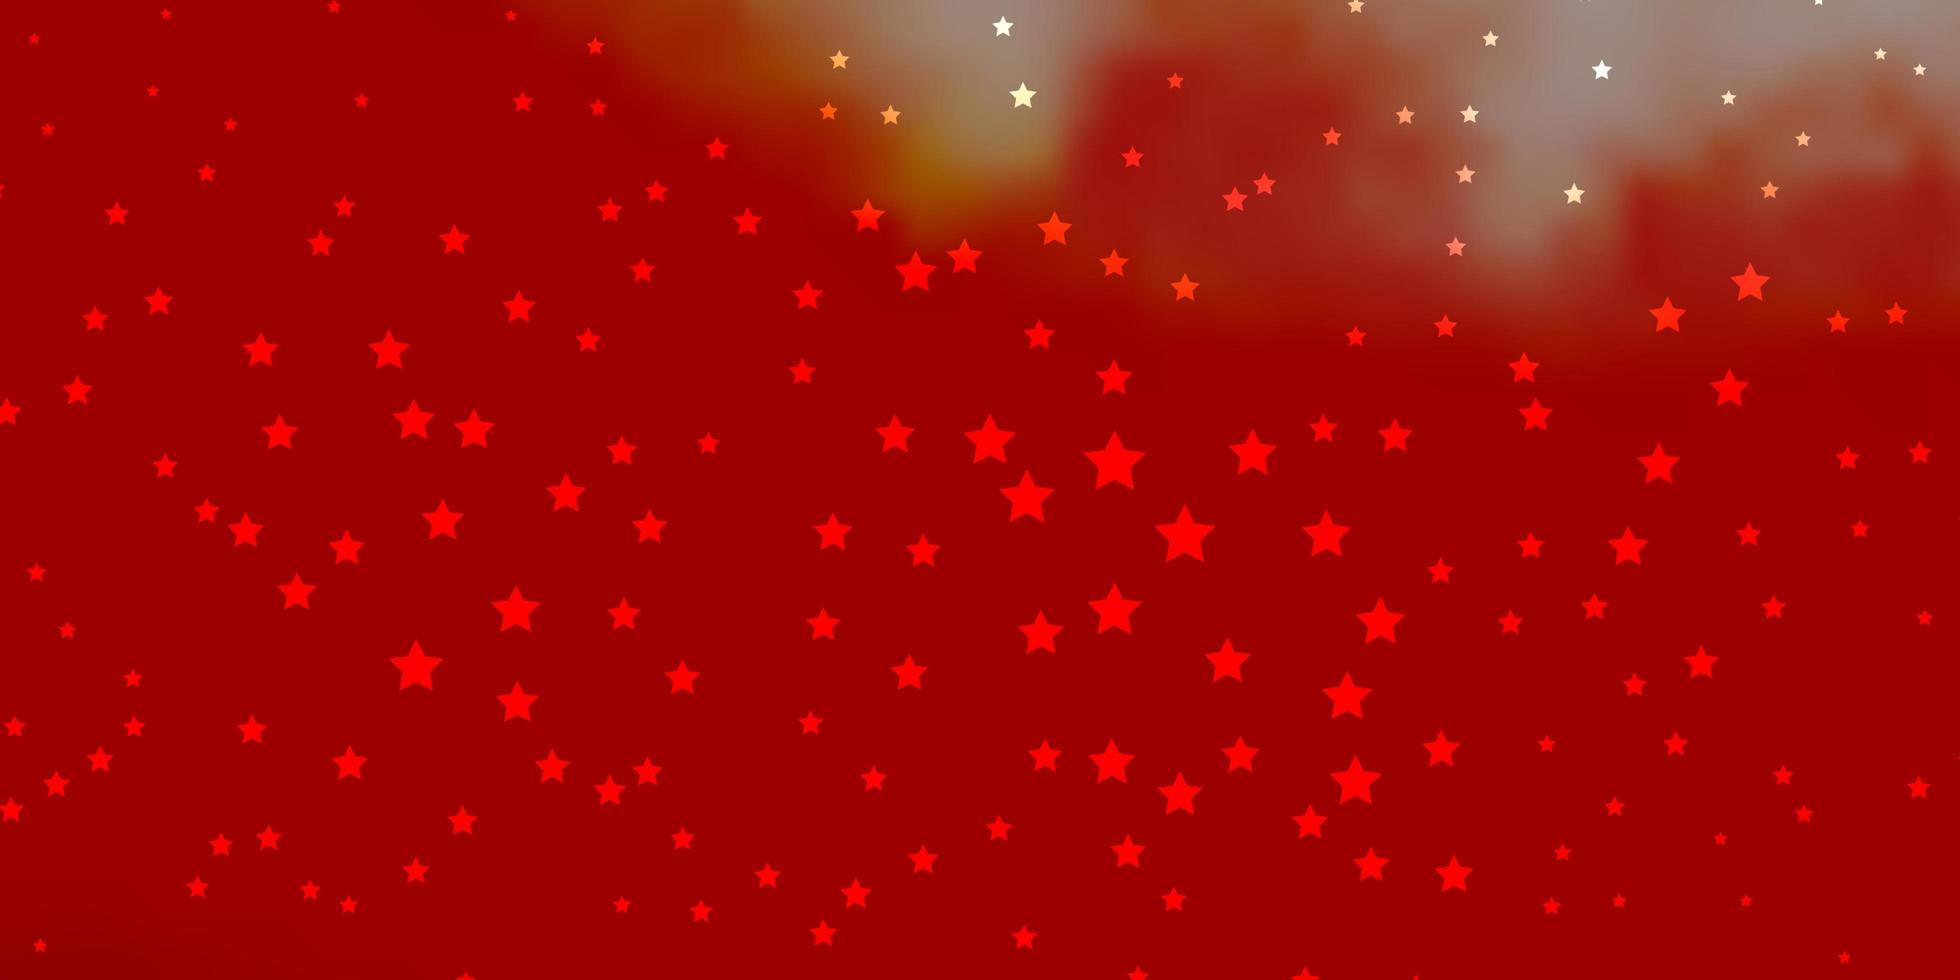 textura de vector rojo oscuro con hermosas estrellas